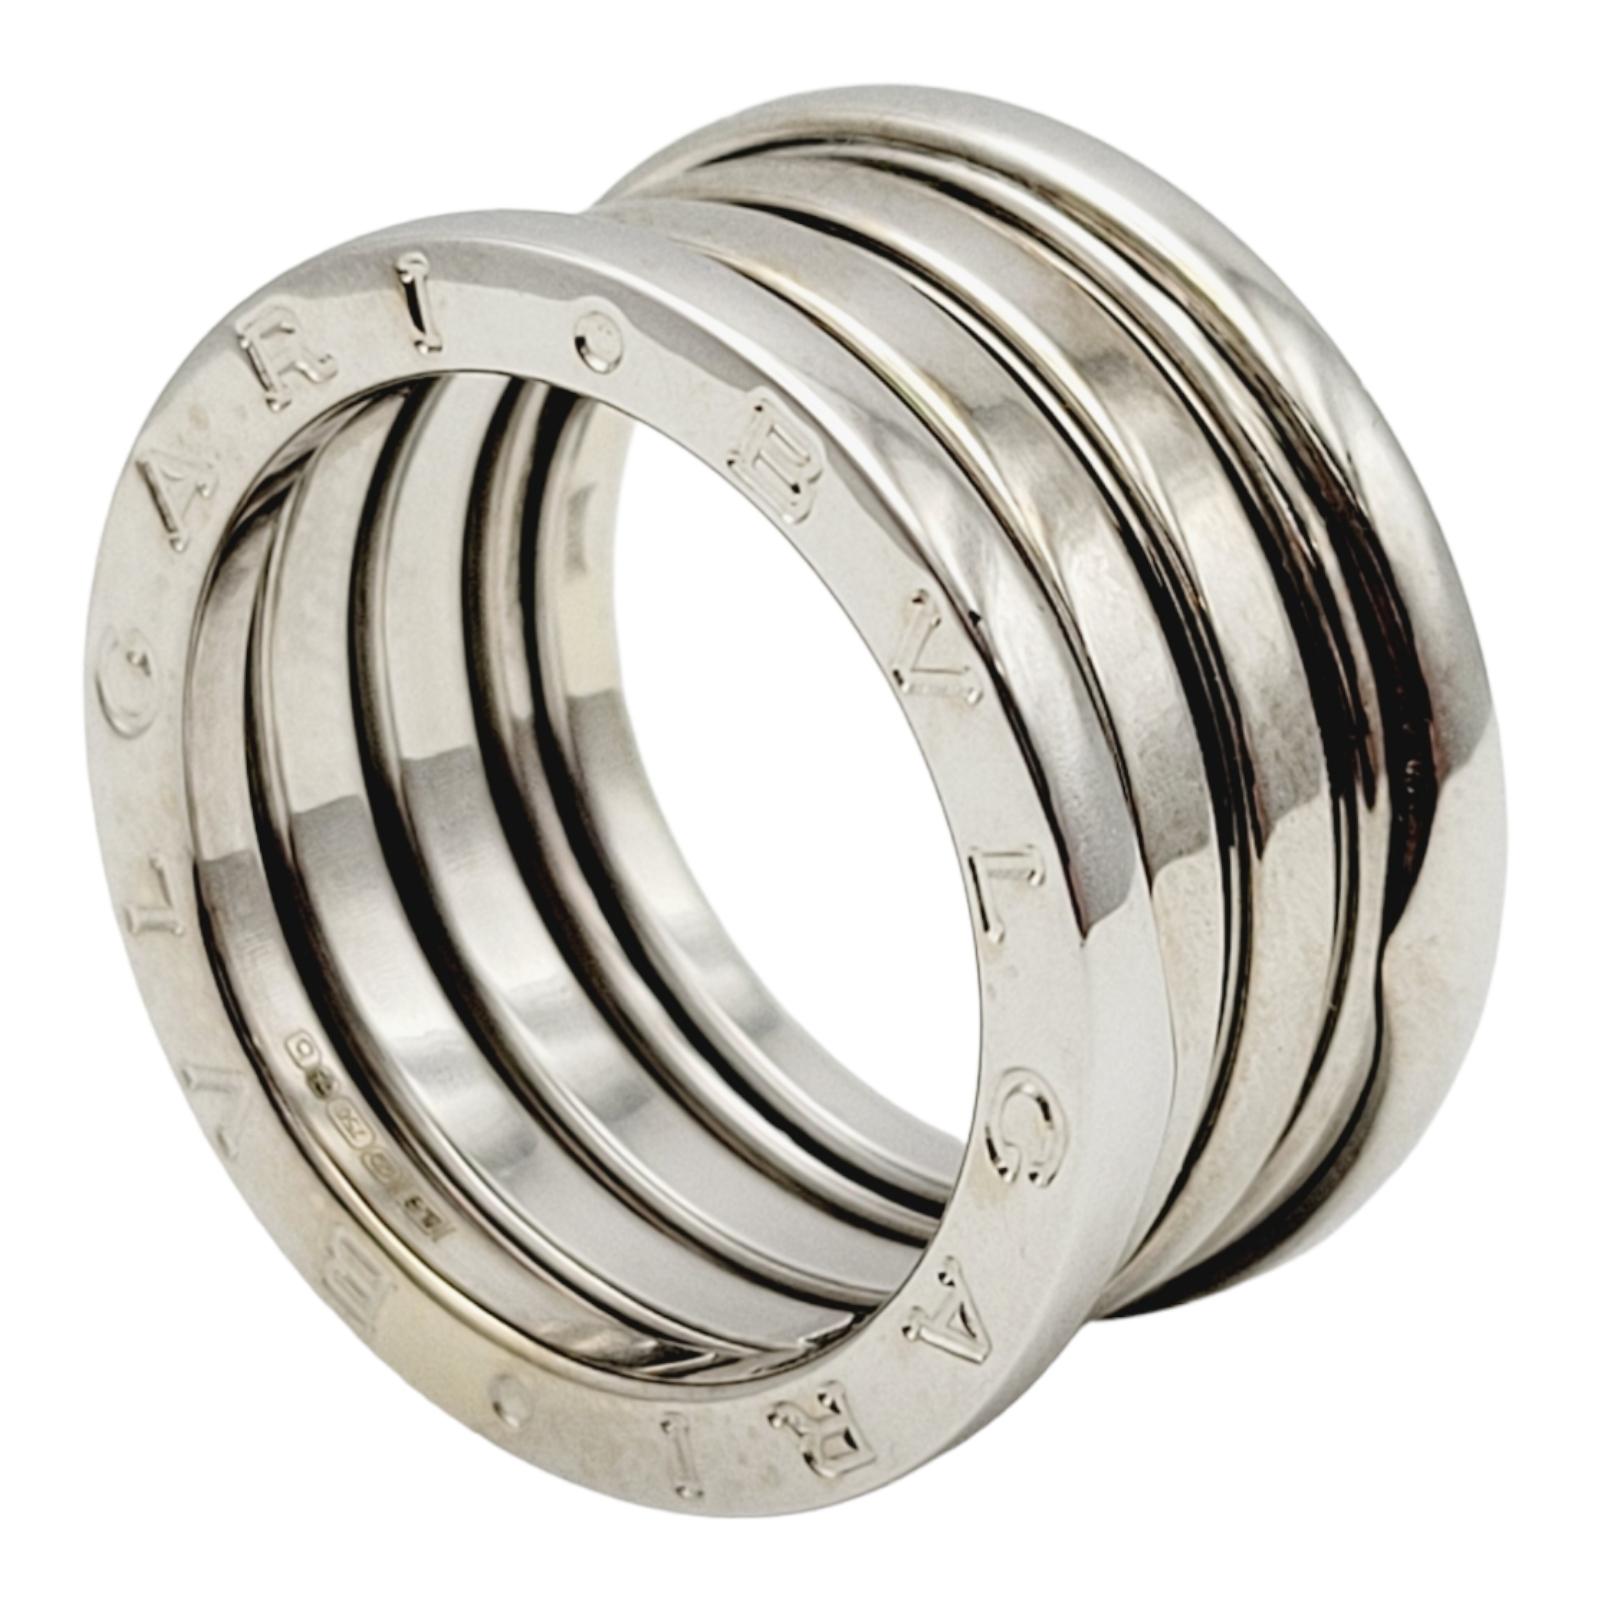 Ringgröße: 7,25 (55 EU)

Wir präsentieren den Bulgari B.ZERO1 Logo Etched Wide Modern Band Ring in 18-Karat Weißgold. Dieses exquisite Stück ist vom ikonischen Kolosseum inspiriert und steht für Bulgaris unvergleichliche Kreativität im